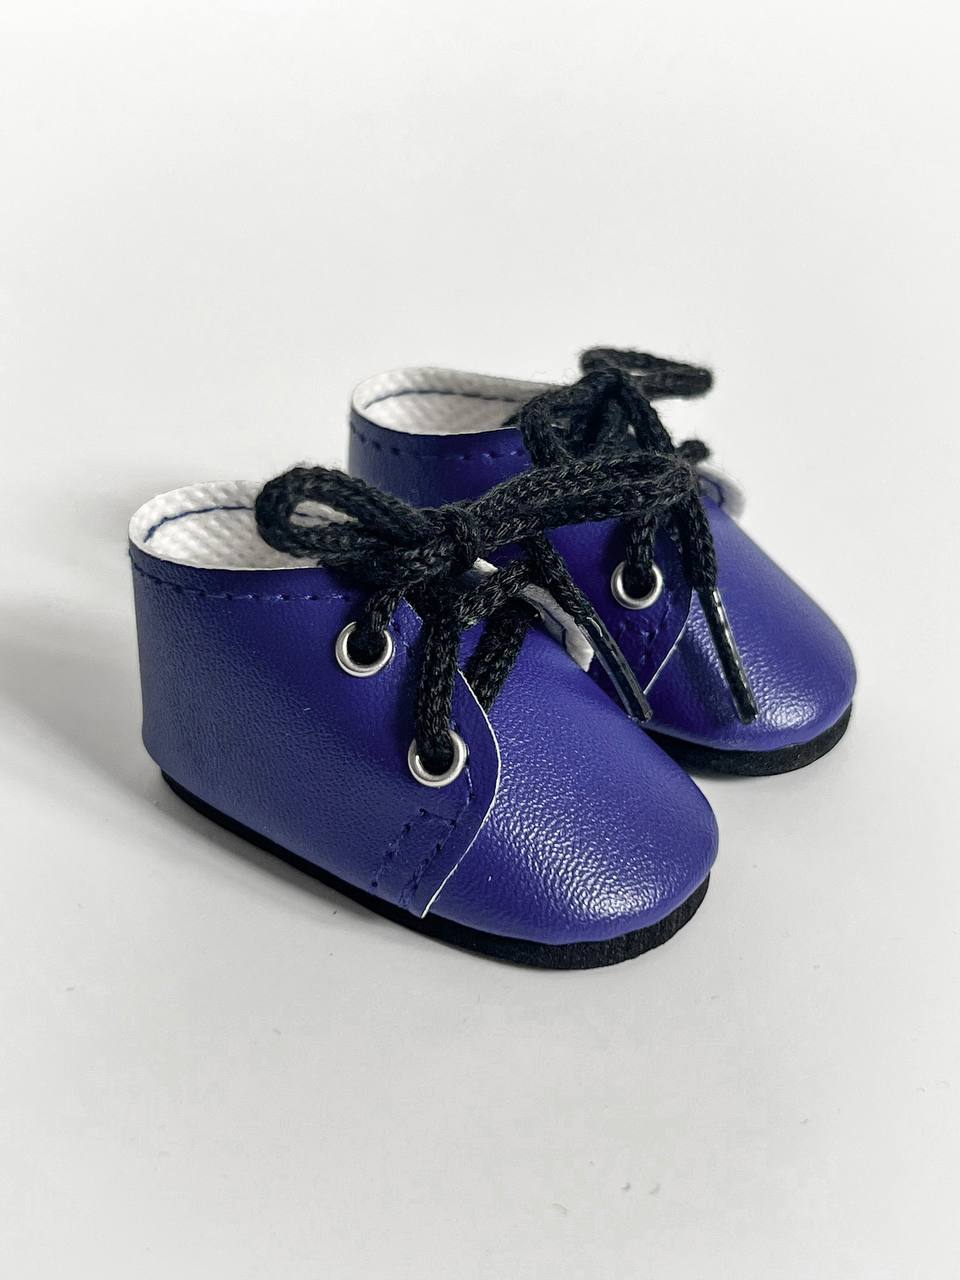 Paola Reina Ботинки синие, для кукол 32 см, арт. 63230